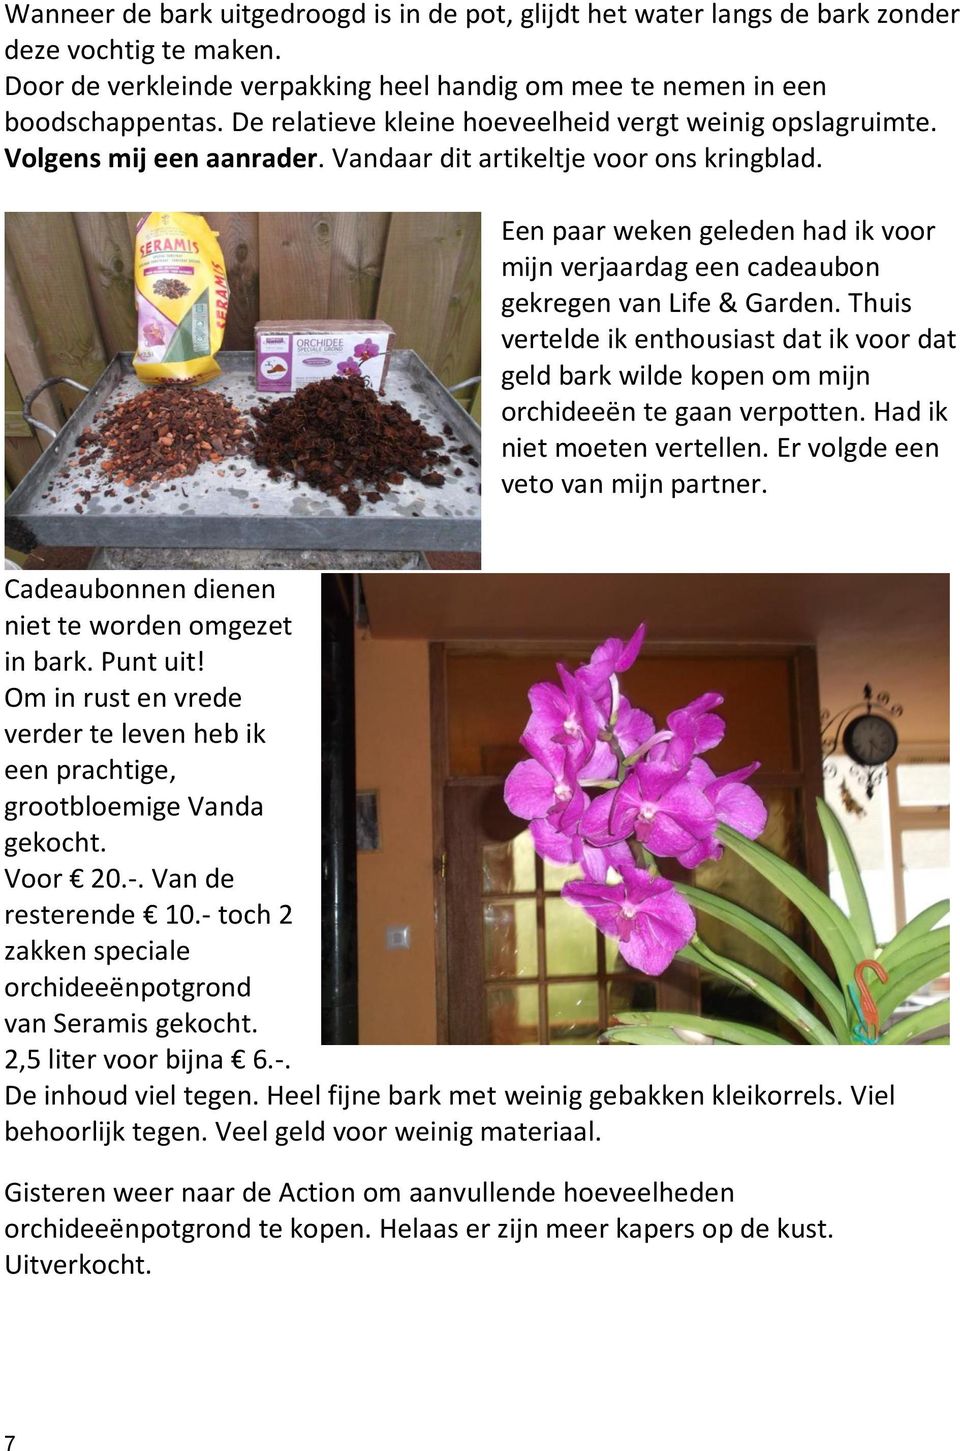 Een paar weken geleden had ik voor mijn verjaardag een cadeaubon gekregen van Life & Garden. Thuis vertelde ik enthousiast dat ik voor dat geld bark wilde kopen om mijn orchideeën te gaan verpotten.